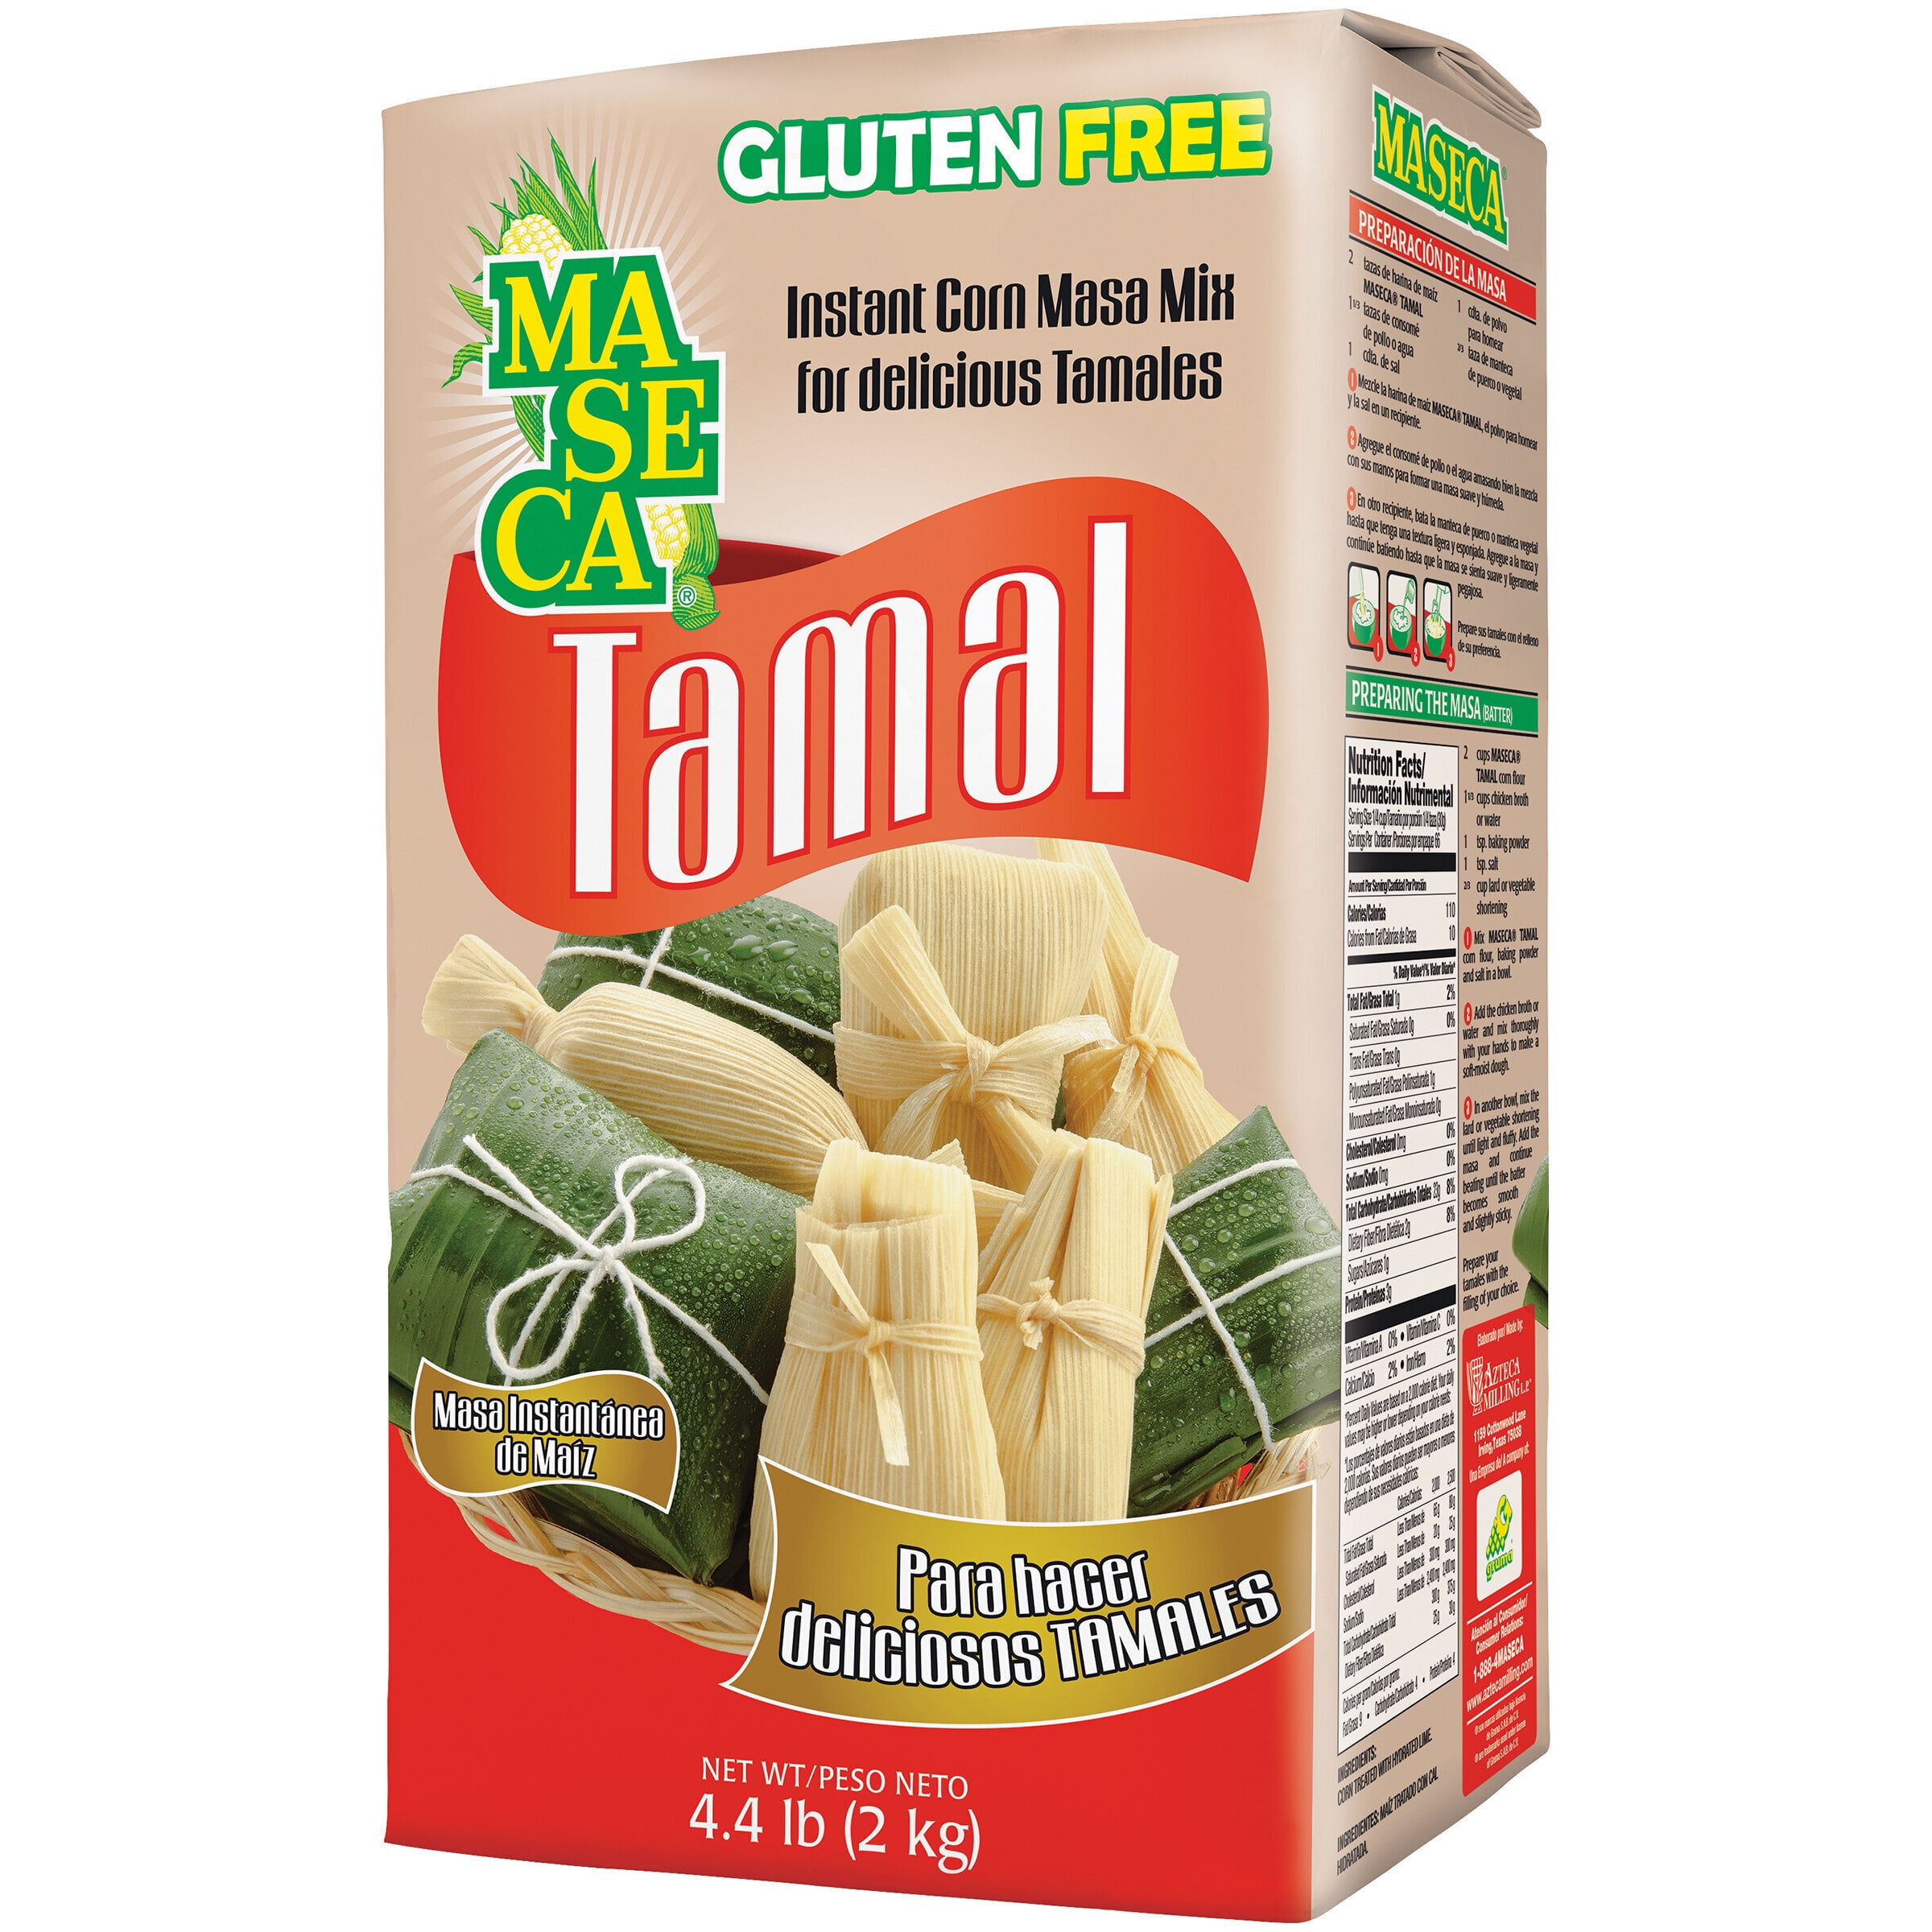 Masa para Tamales - Corn Masa Ready to Make Tamales - 4 lbs